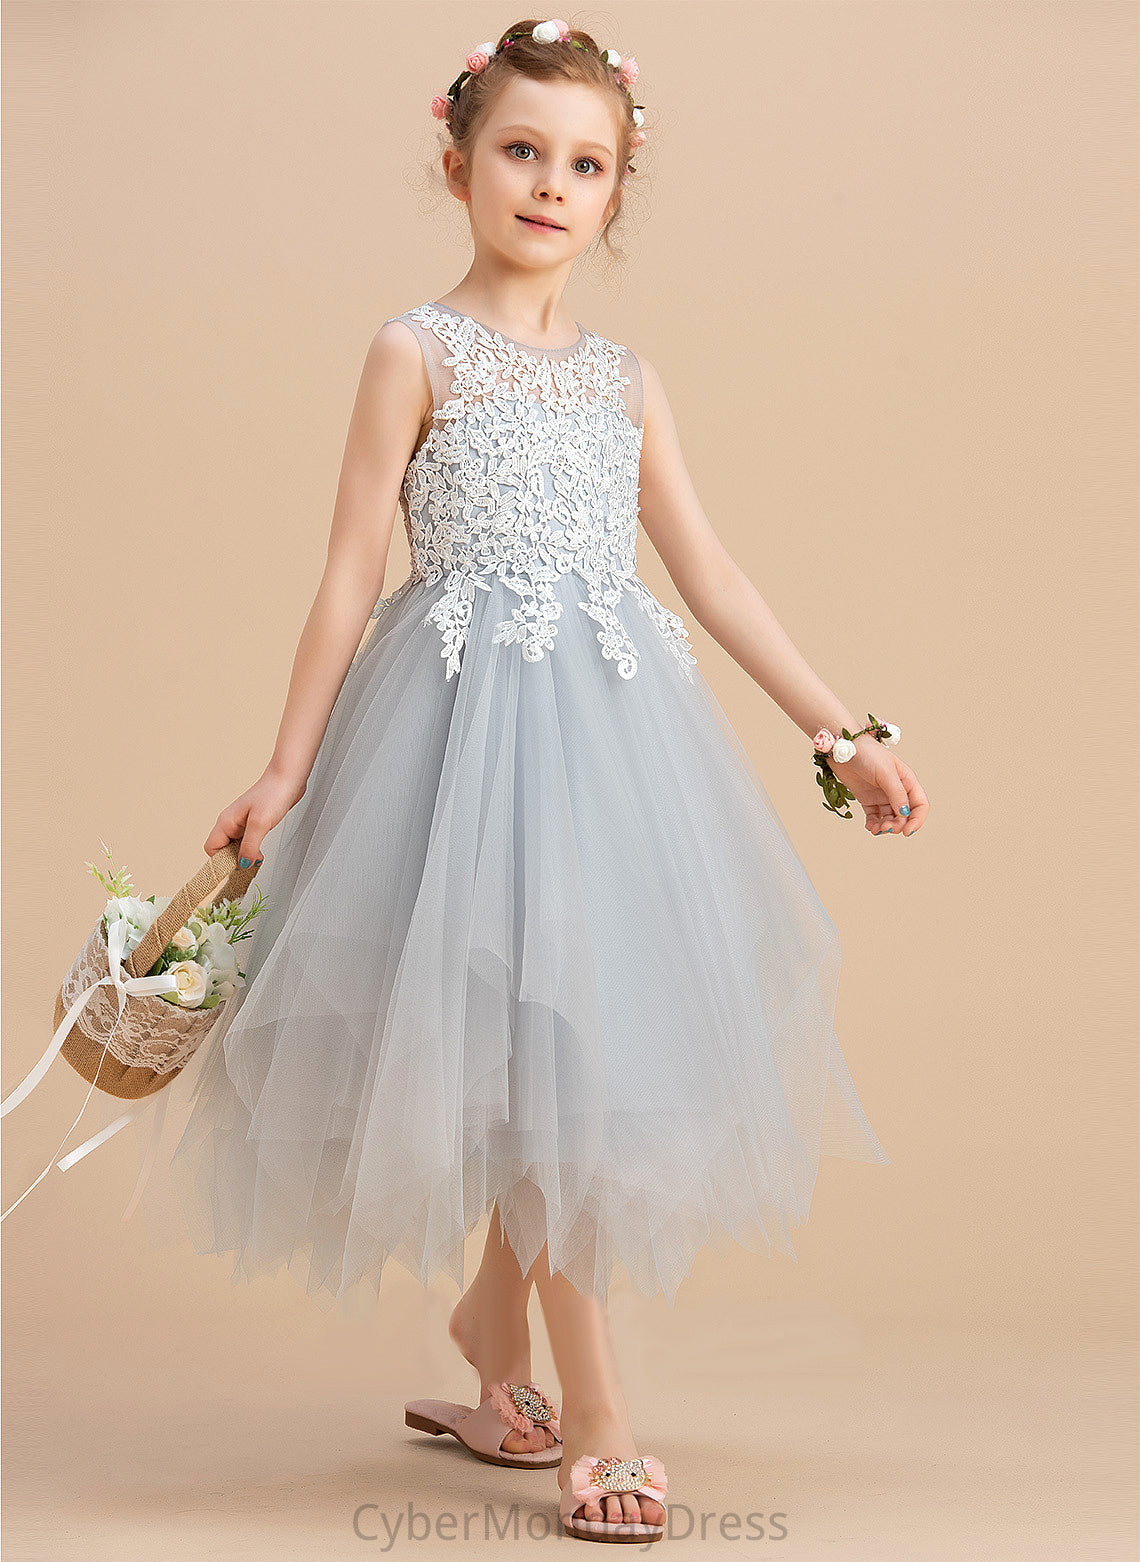 Neck Girl Flower Girl Dresses - Flower Sleeveless Scoop Tulle/Lace Dress Averie A-Line Tea-length